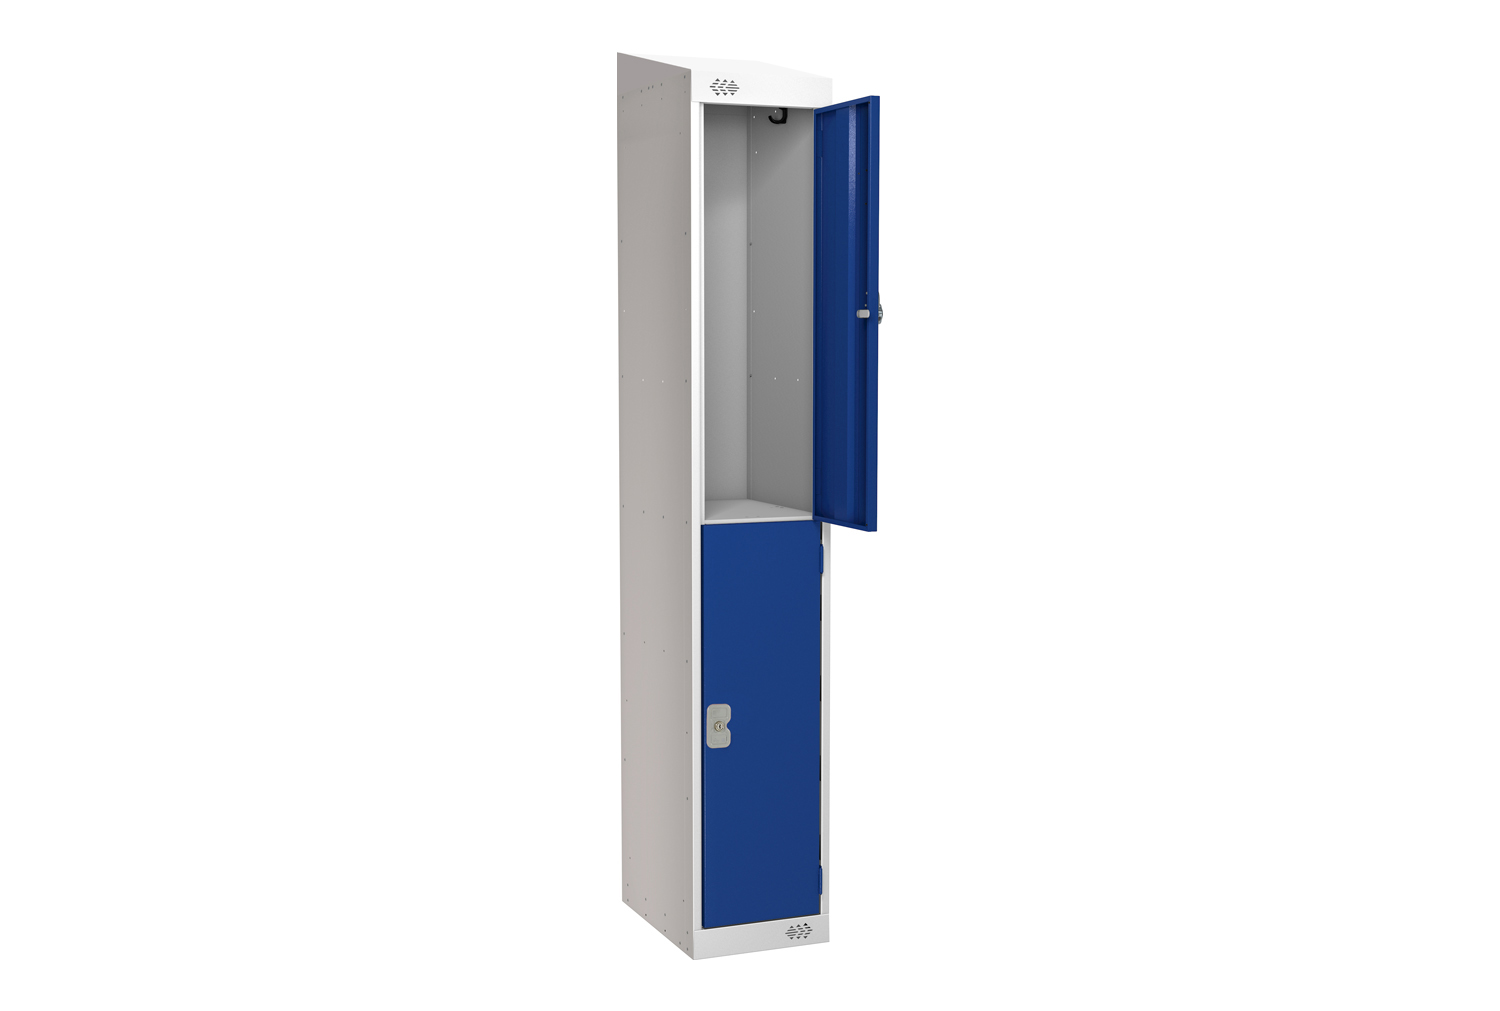 Deluxe 2 Door Locker With Sloping Top, 45wx45dx193/180h (cm), Combination Lock, Blue